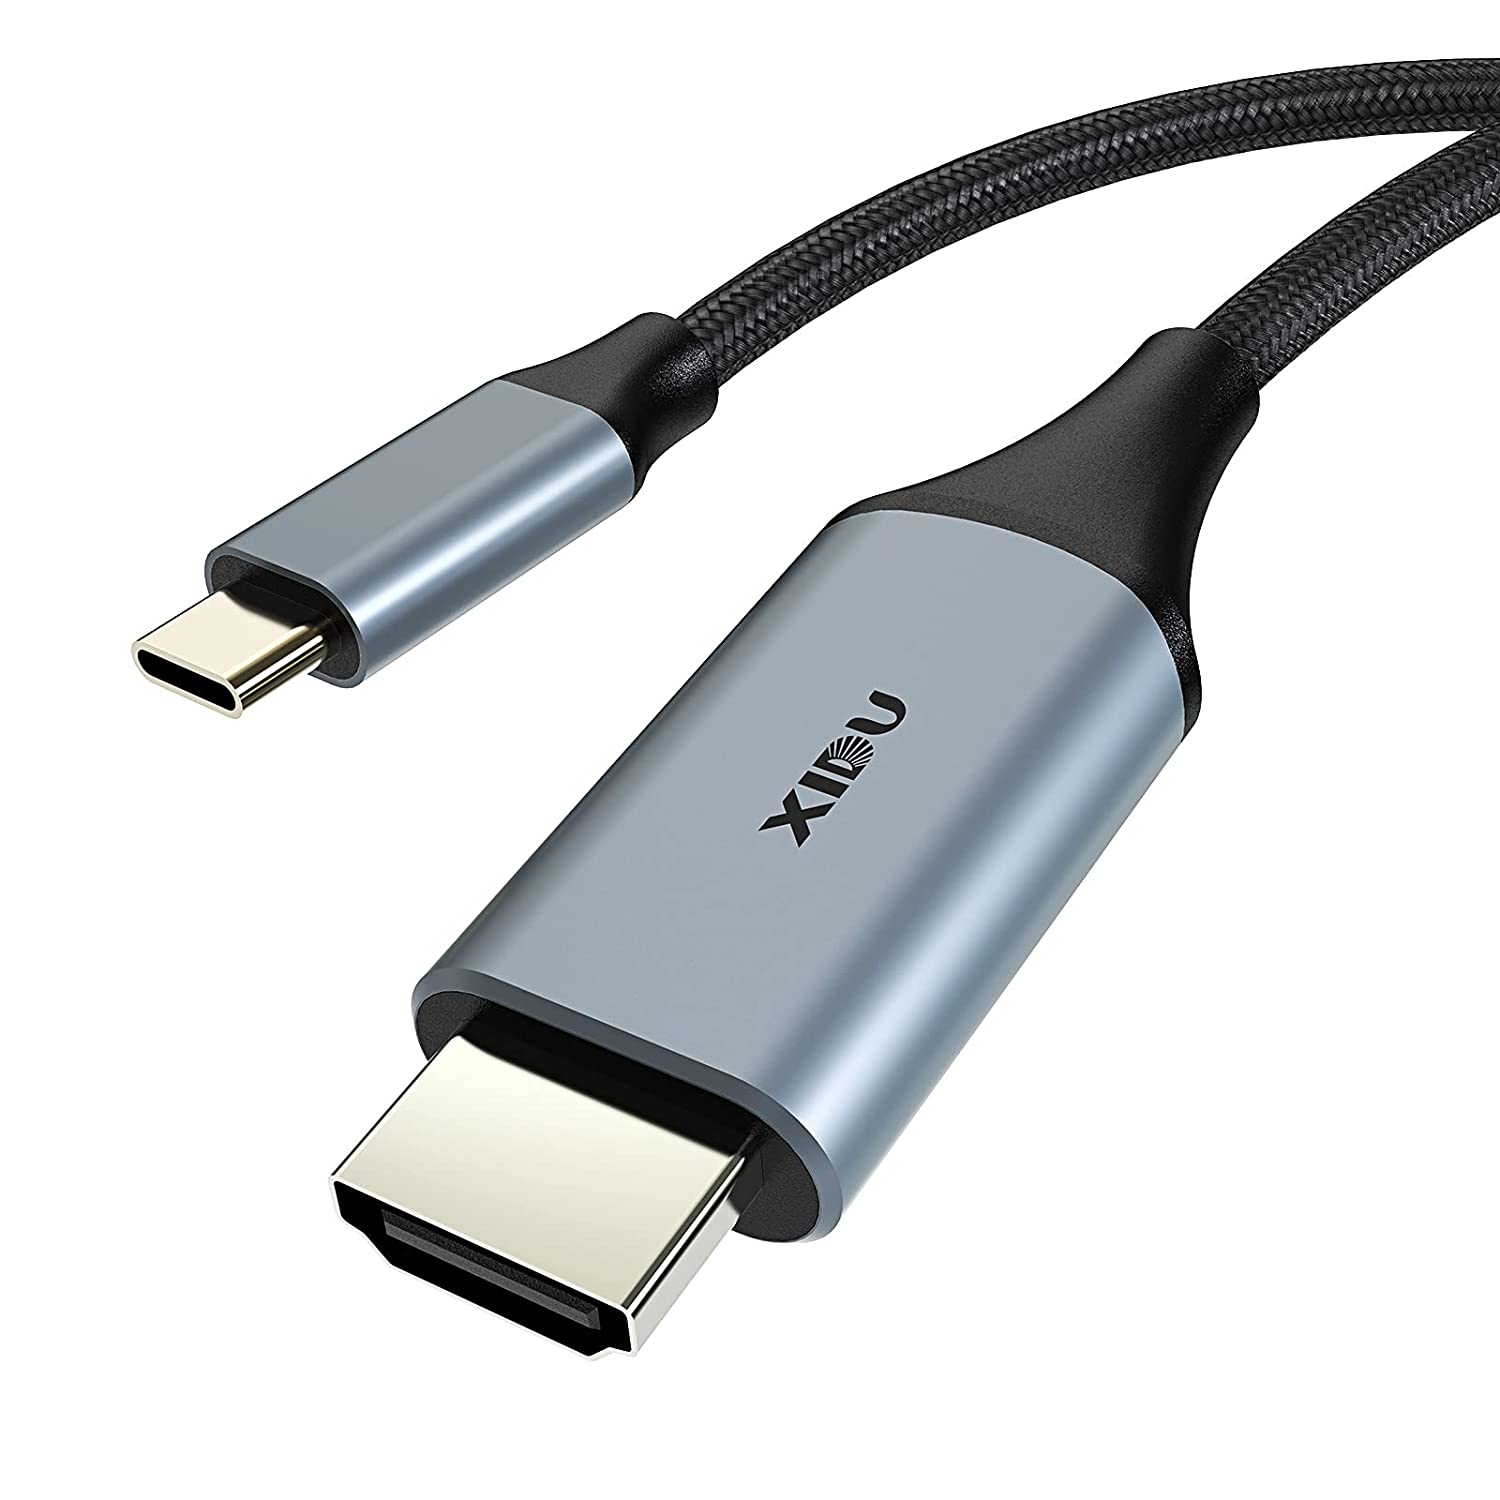 Adaptador USB Tipo C a HDMI 4K 60Hz Para Macbook Pro - CABLETIME